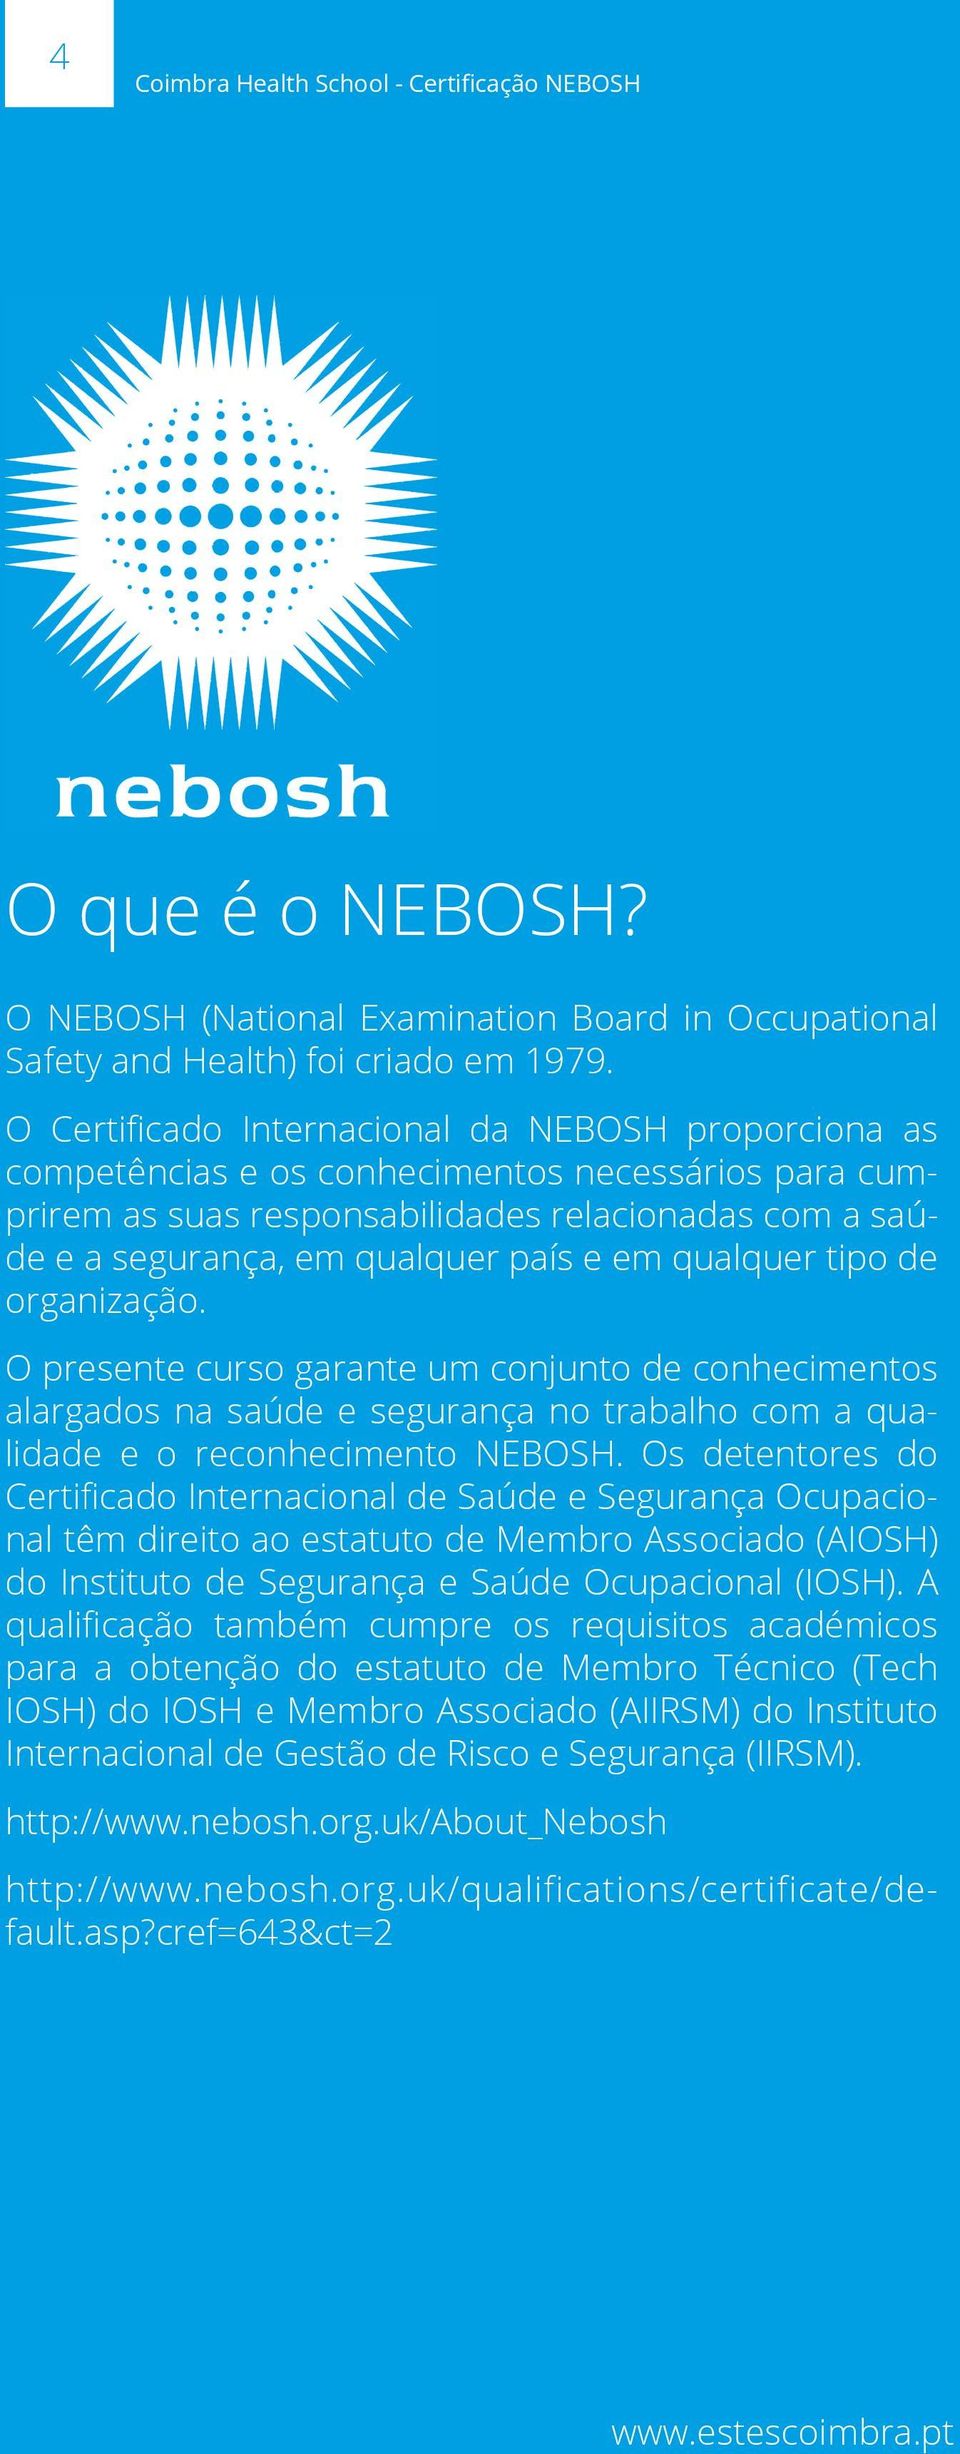 qualquer tipo de organização. O presente curso garante um conjunto de conhecimentos alargados na saúde e segurança no trabalho com a qualidade e o reconhecimento NEBOSH.